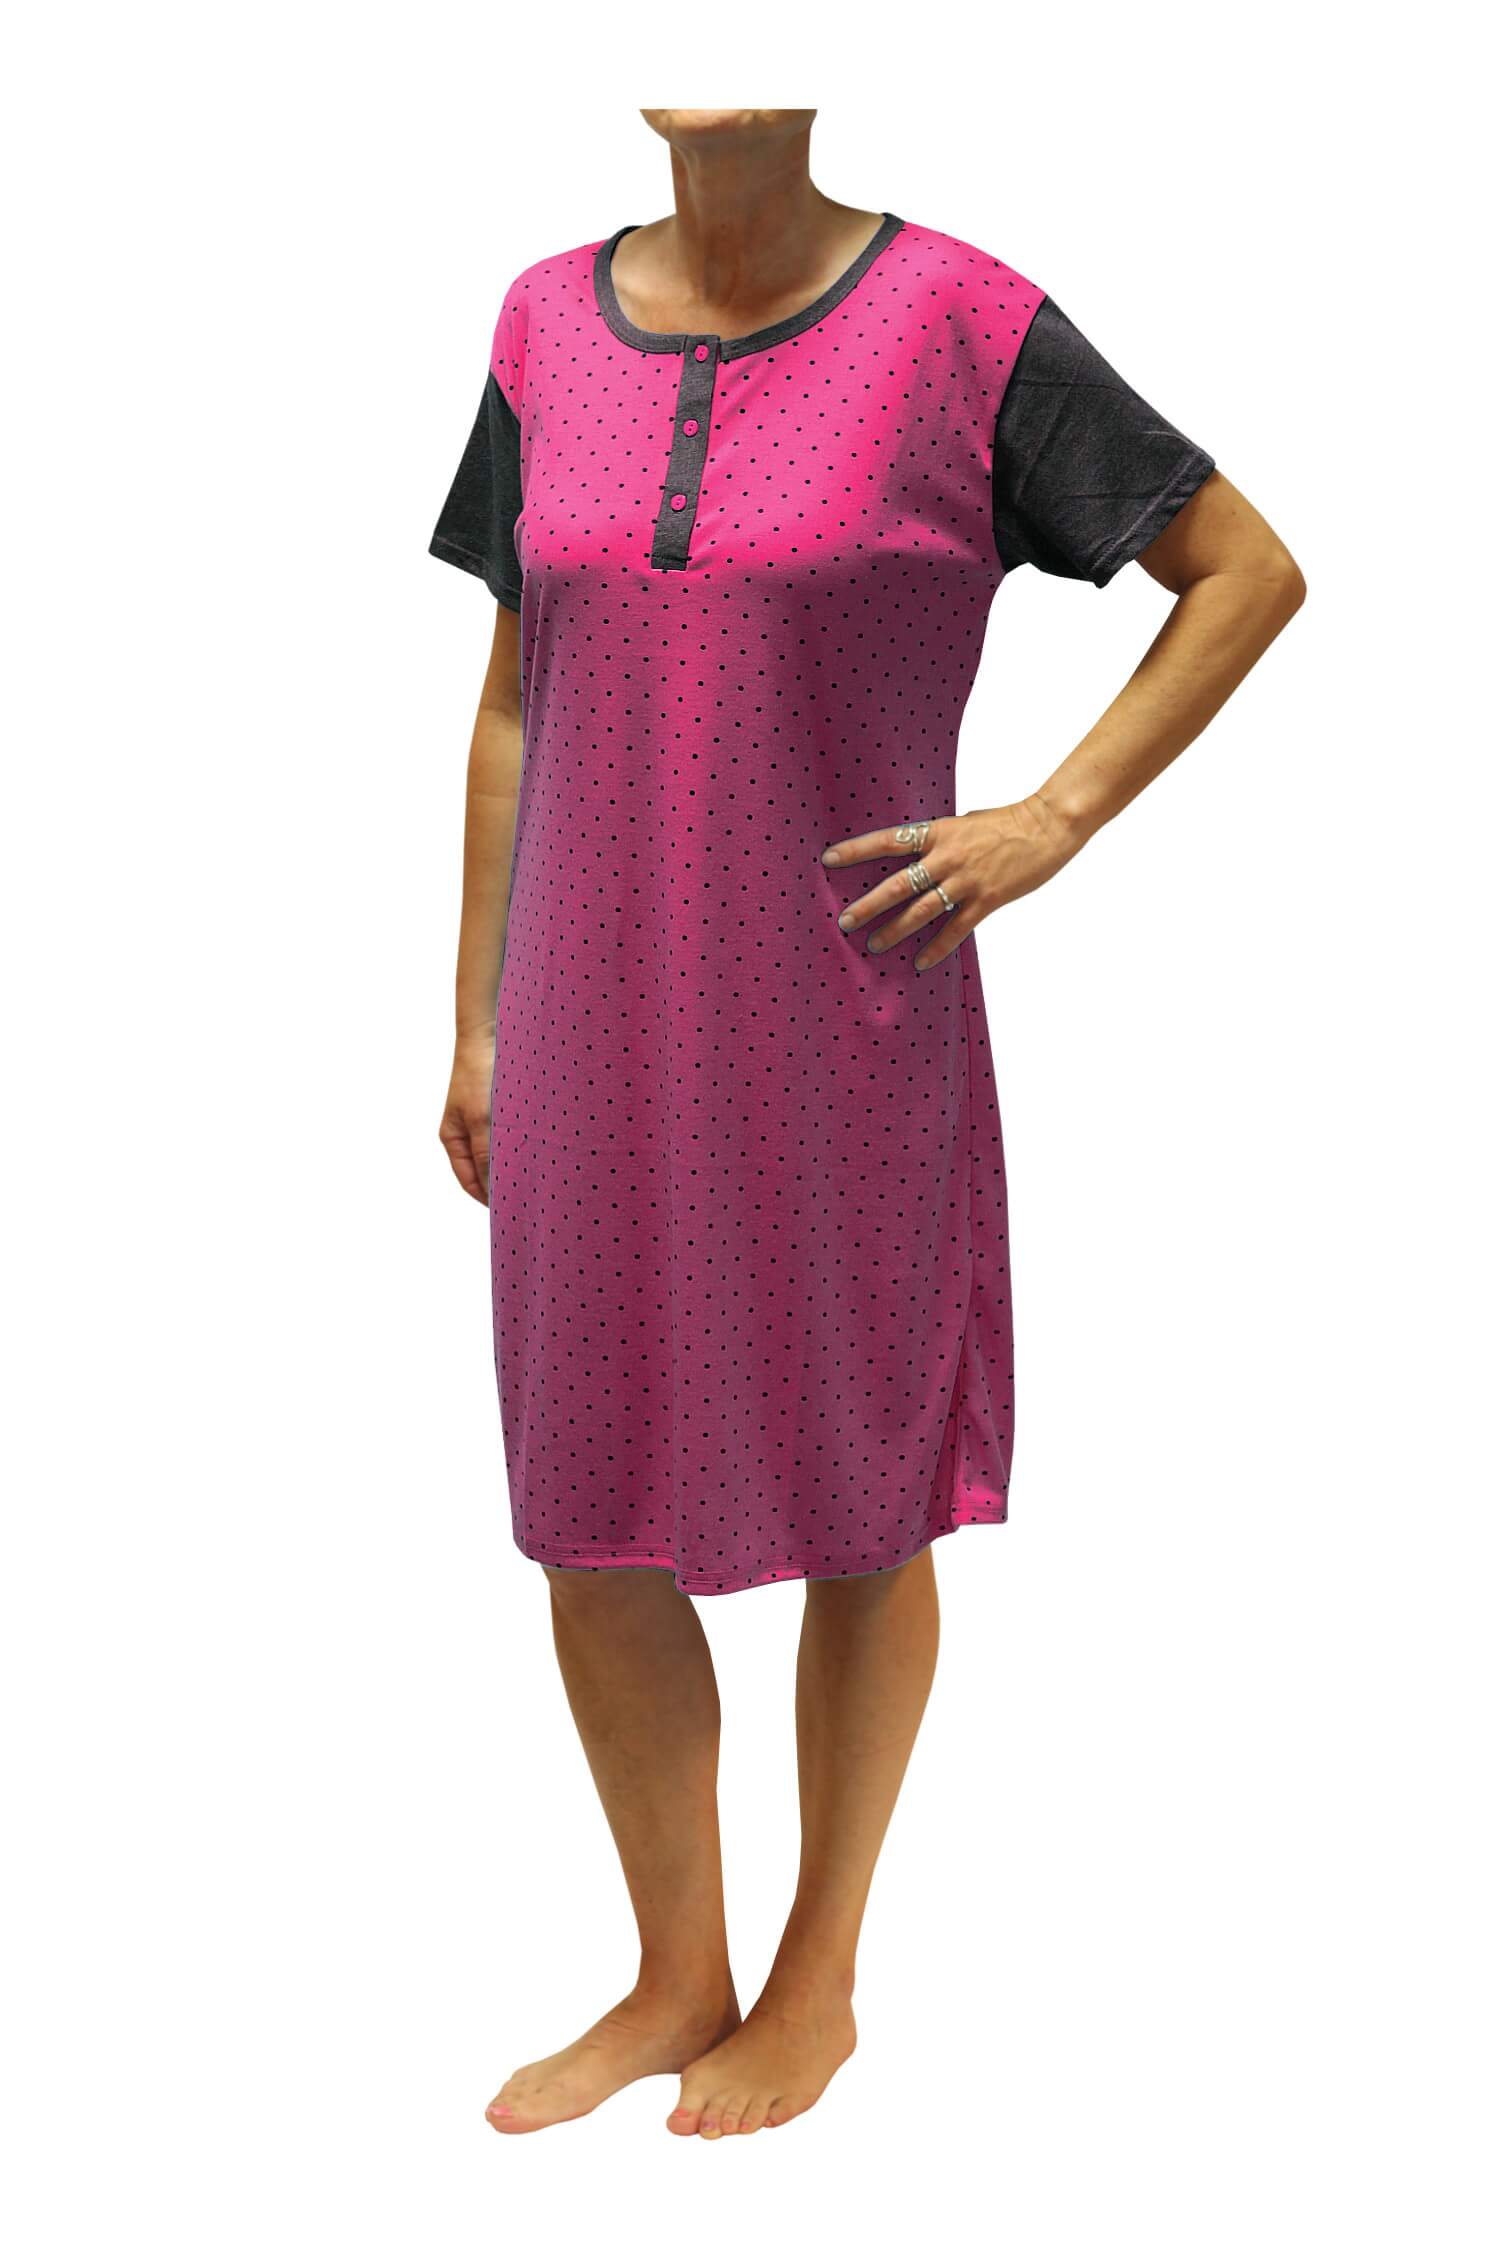 Adéla dámská noční košile s puntíky DNU329-NT M růžová